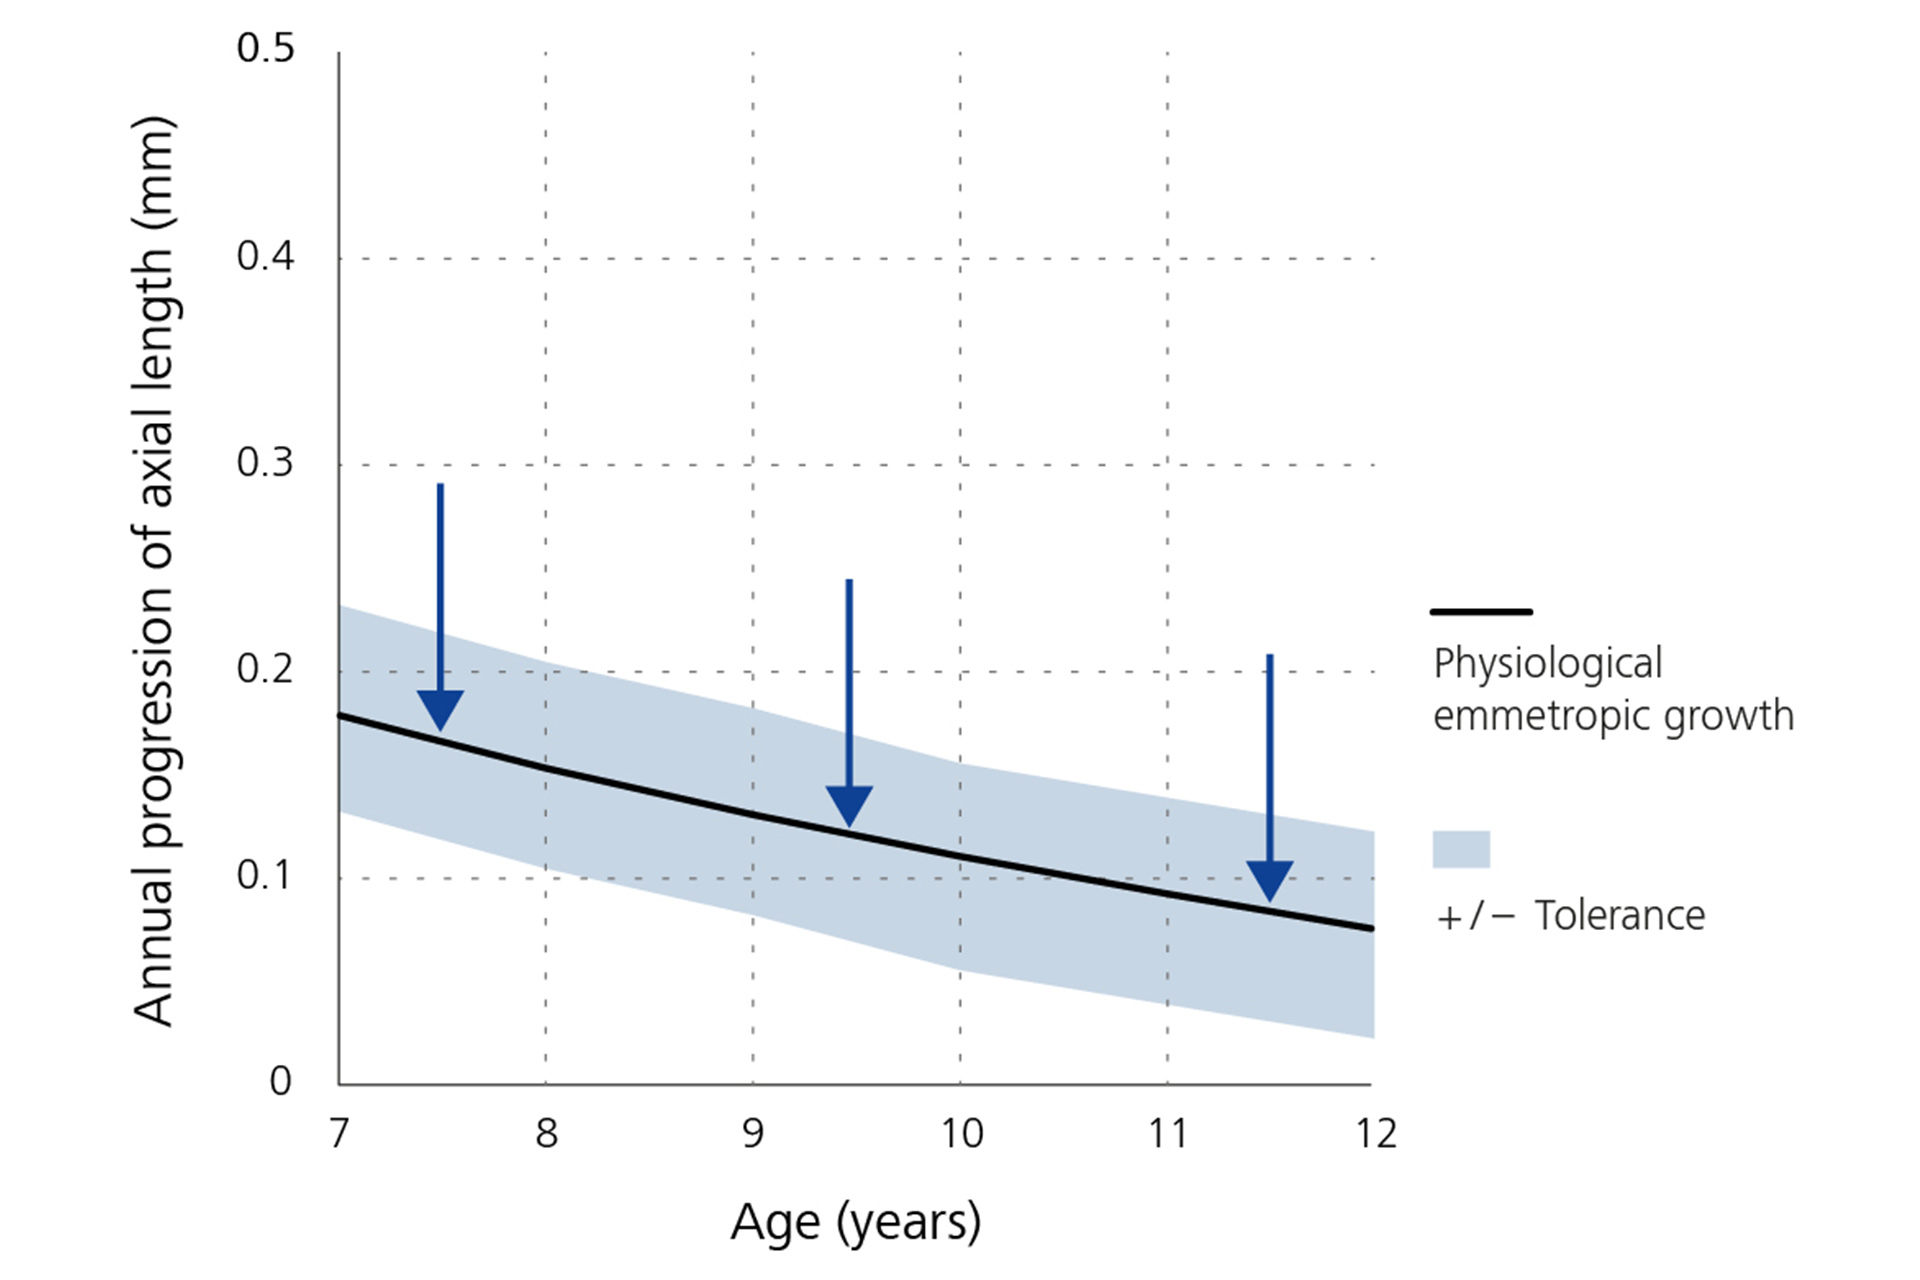 En linjegraf der viser den årlige reduktion i progressionen af aksial længe - basislinje efter alder.